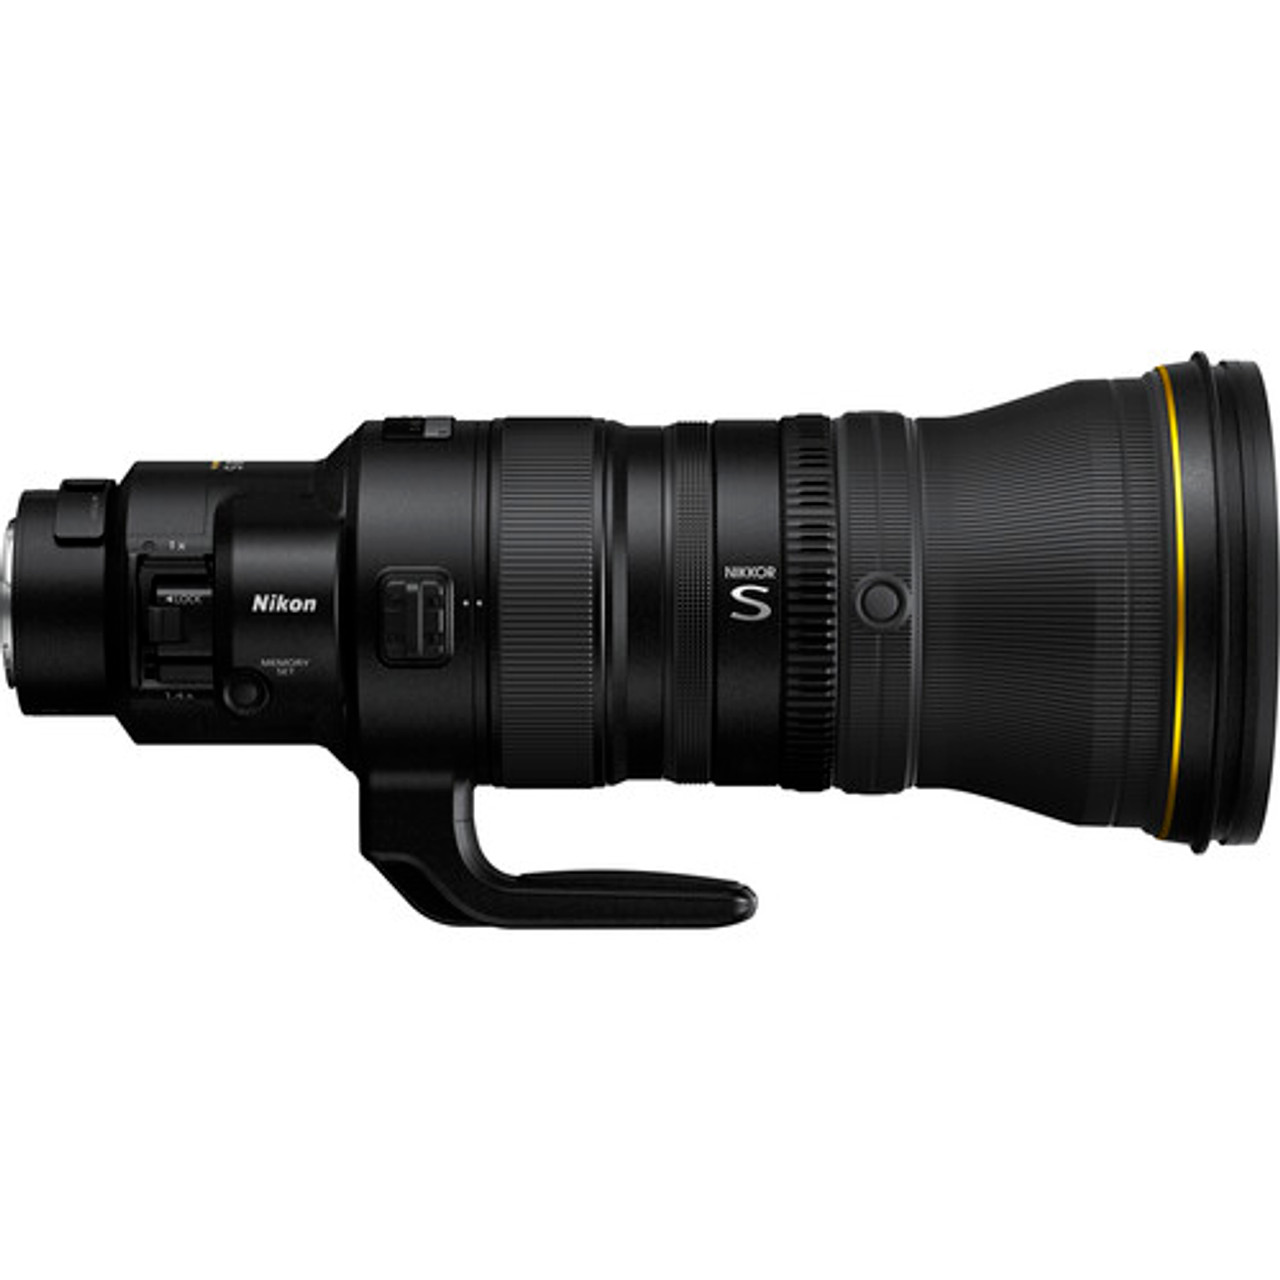 Don Zeck Lens Cap for Nikon 400mm f/2.8 AF-S or Nikon 400mm f/2.8 VR Lenses 